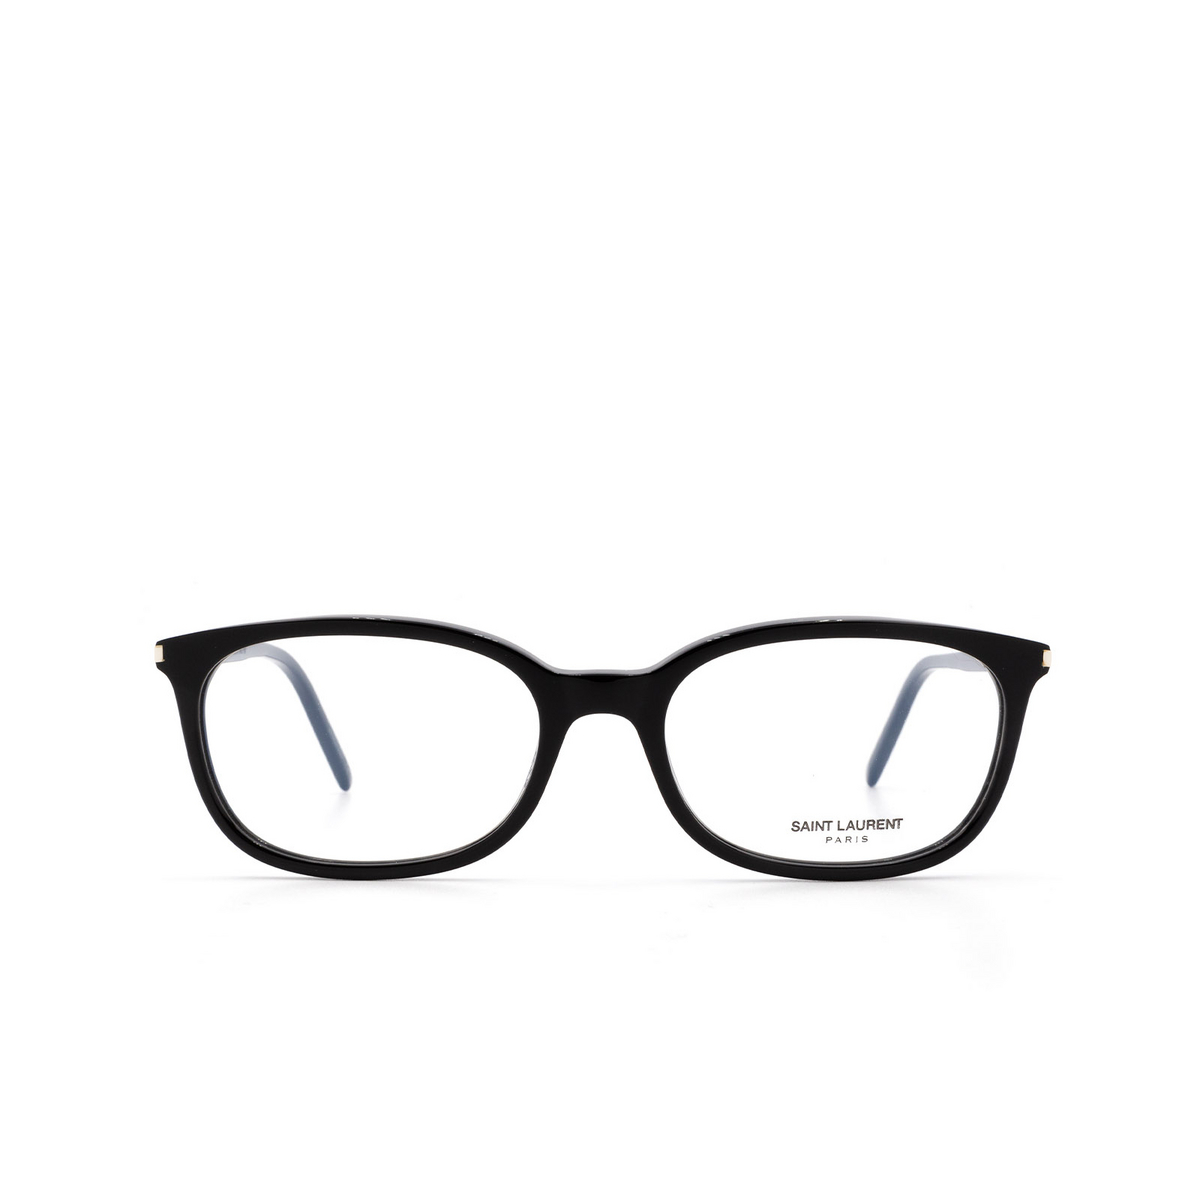 Saint Laurent® Rectangle Eyeglasses: SL 297 color Black 005 - 1/3.